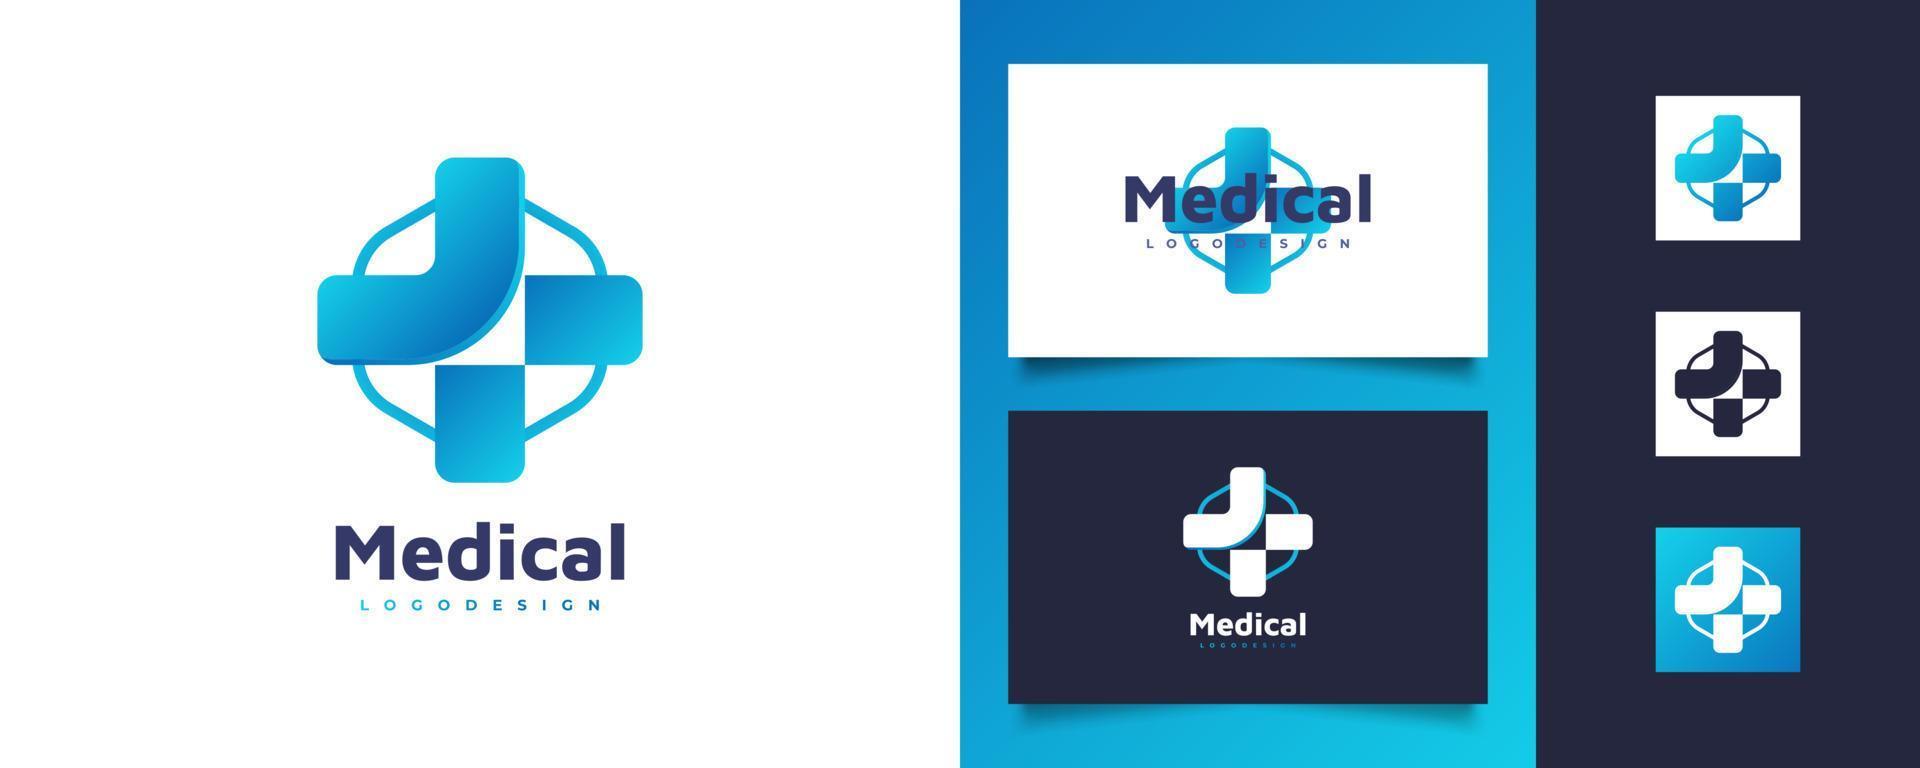 logotipo da cruz azul para identidade do logotipo do hospital, farmácia, drogaria ou clínica. cruz com logotipo de forma hexagonal para negócios de saúde vetor